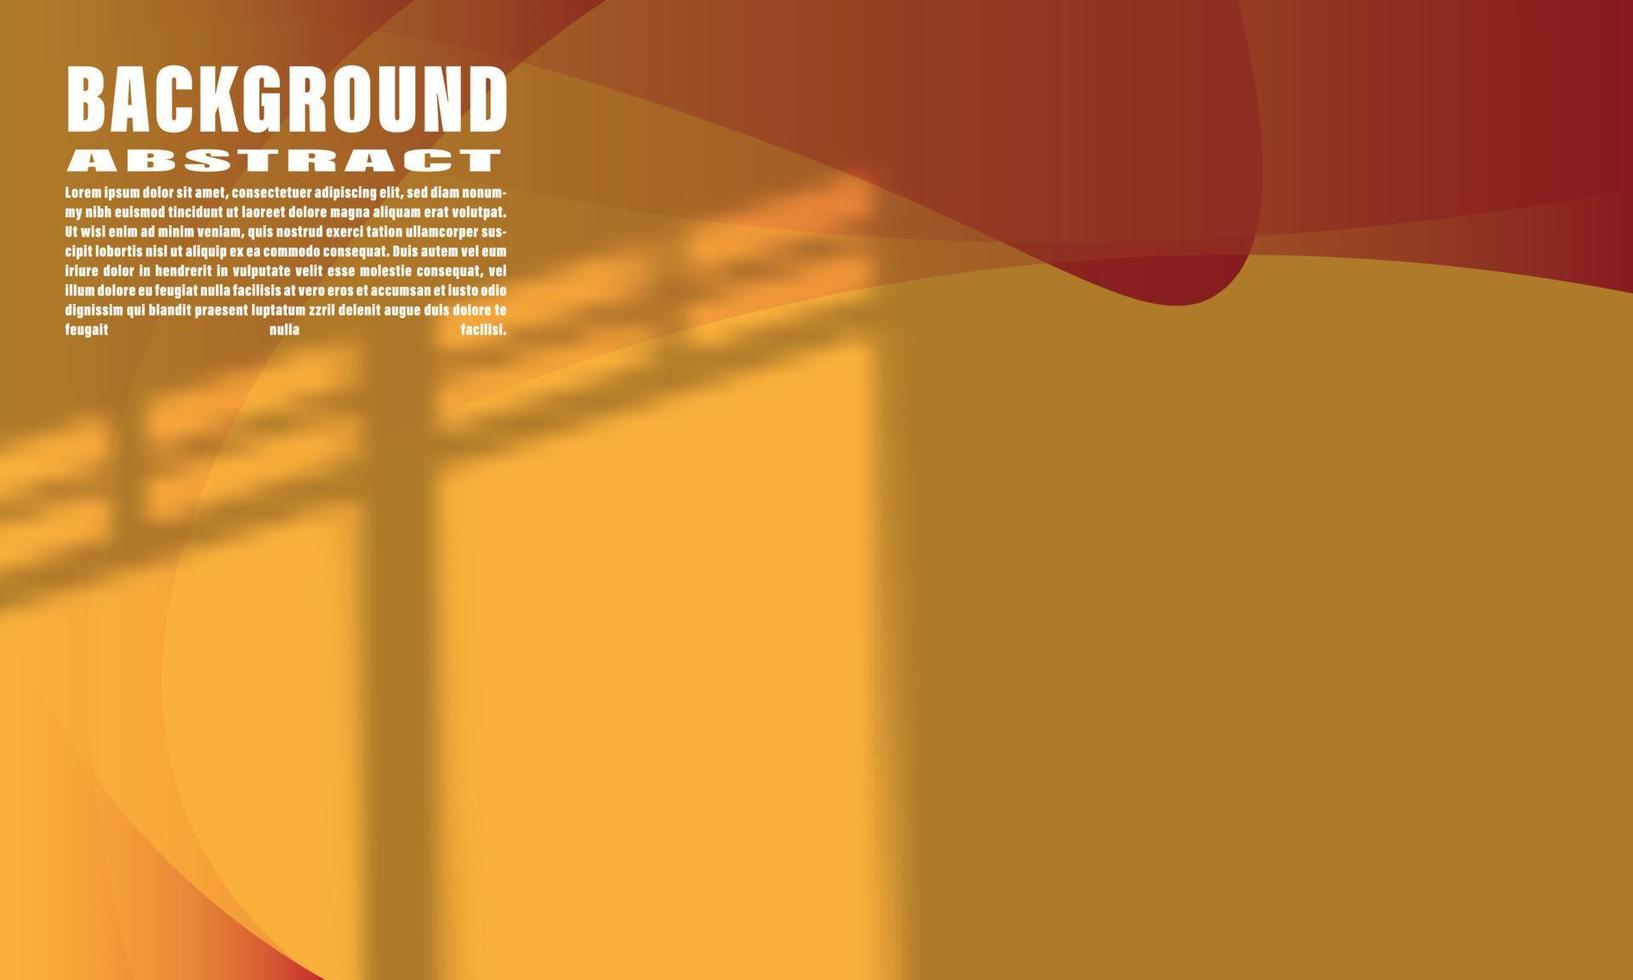 abstrakt bakgrund gemetrisk flytande färgrik Vinka form orange och röd med elegant trendig shdaow täcka över för webb design eps 10 vektor